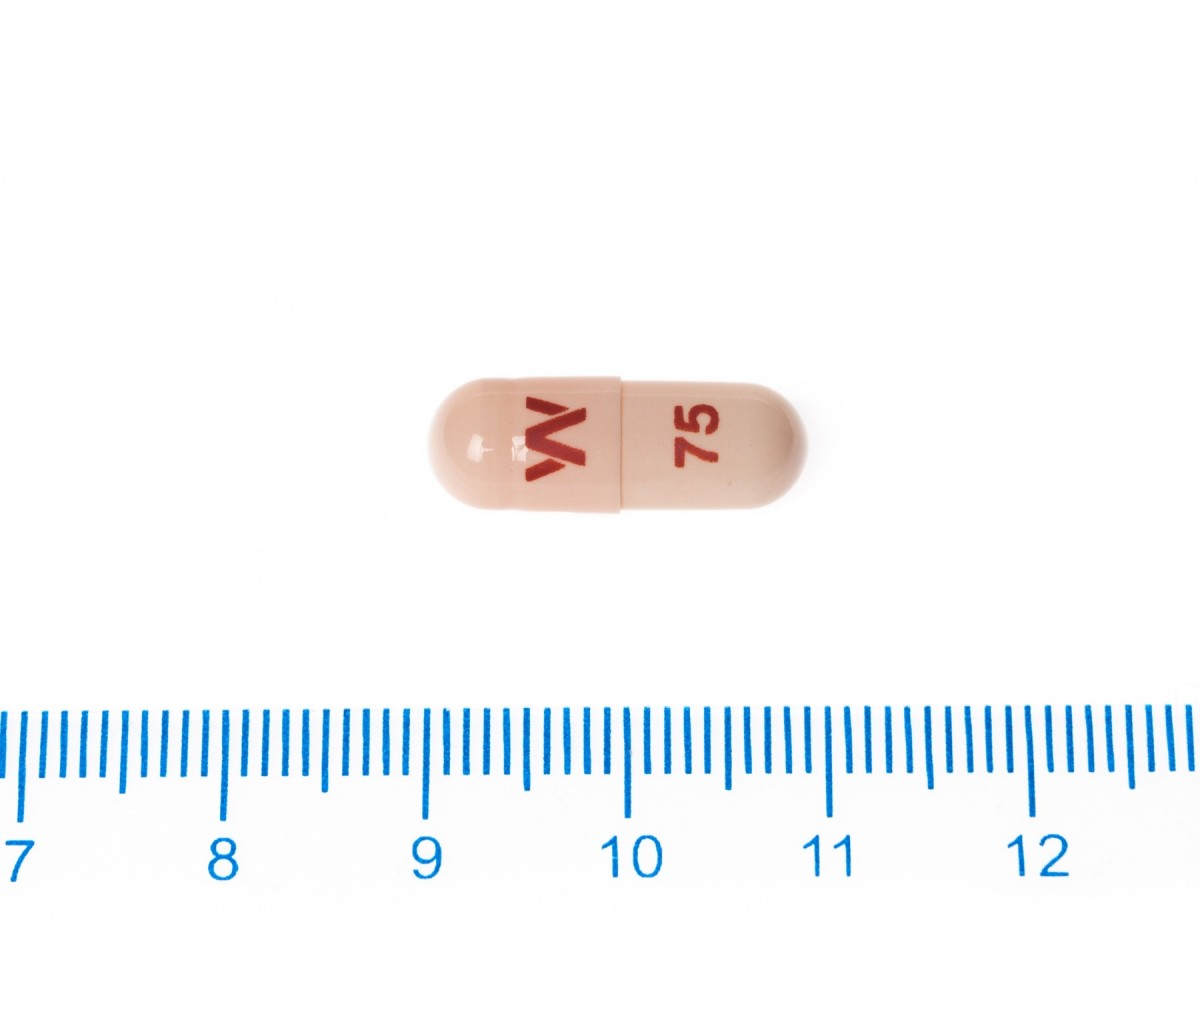 VANDRAL RETARD 75 mg CAPSULAS DURAS DE LIBERACION PROLONGADA, 30 cápsulas fotografía de la forma farmacéutica.